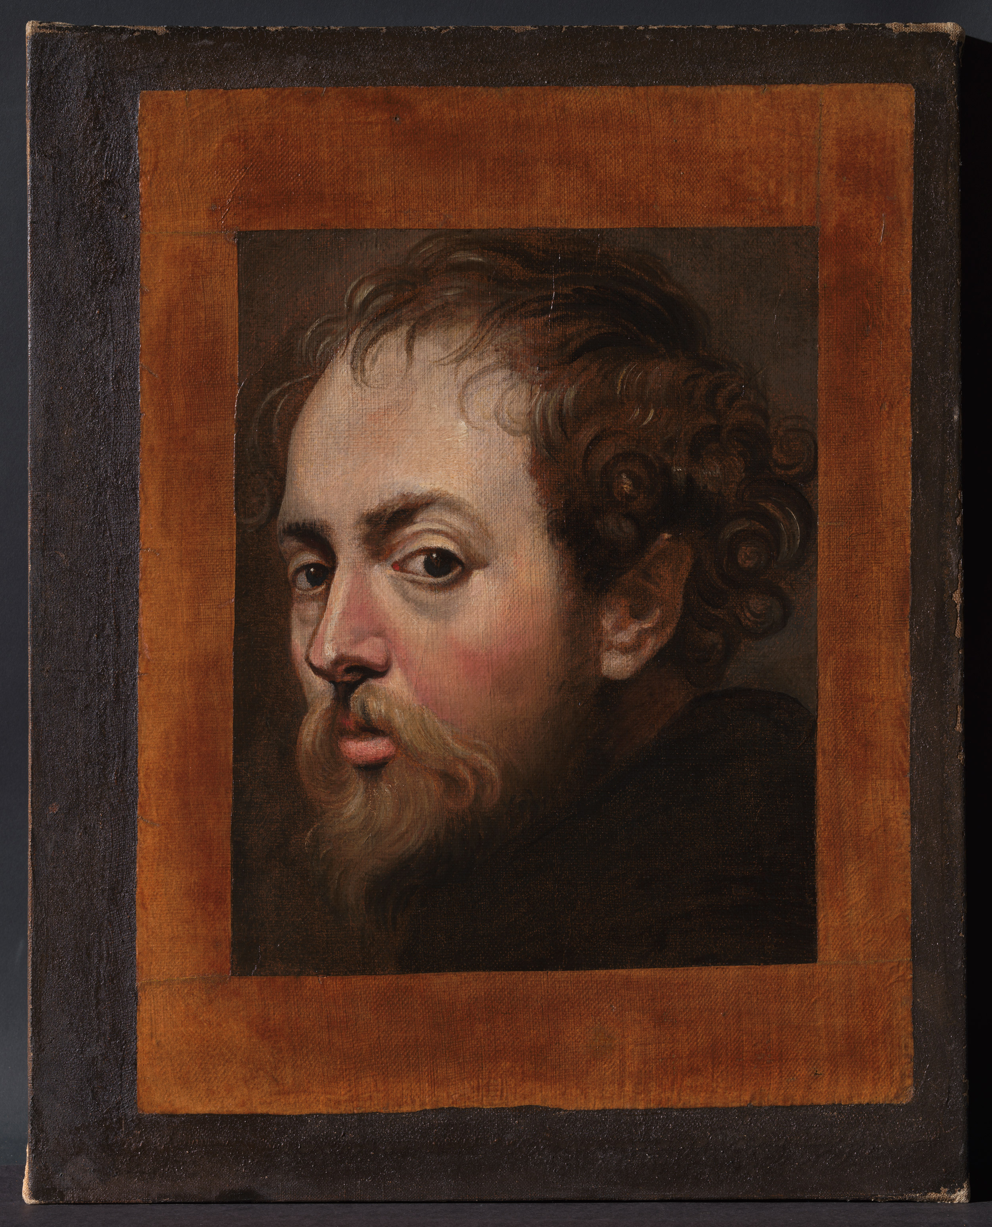 Rubens House presents new Rubens Self-Portrait